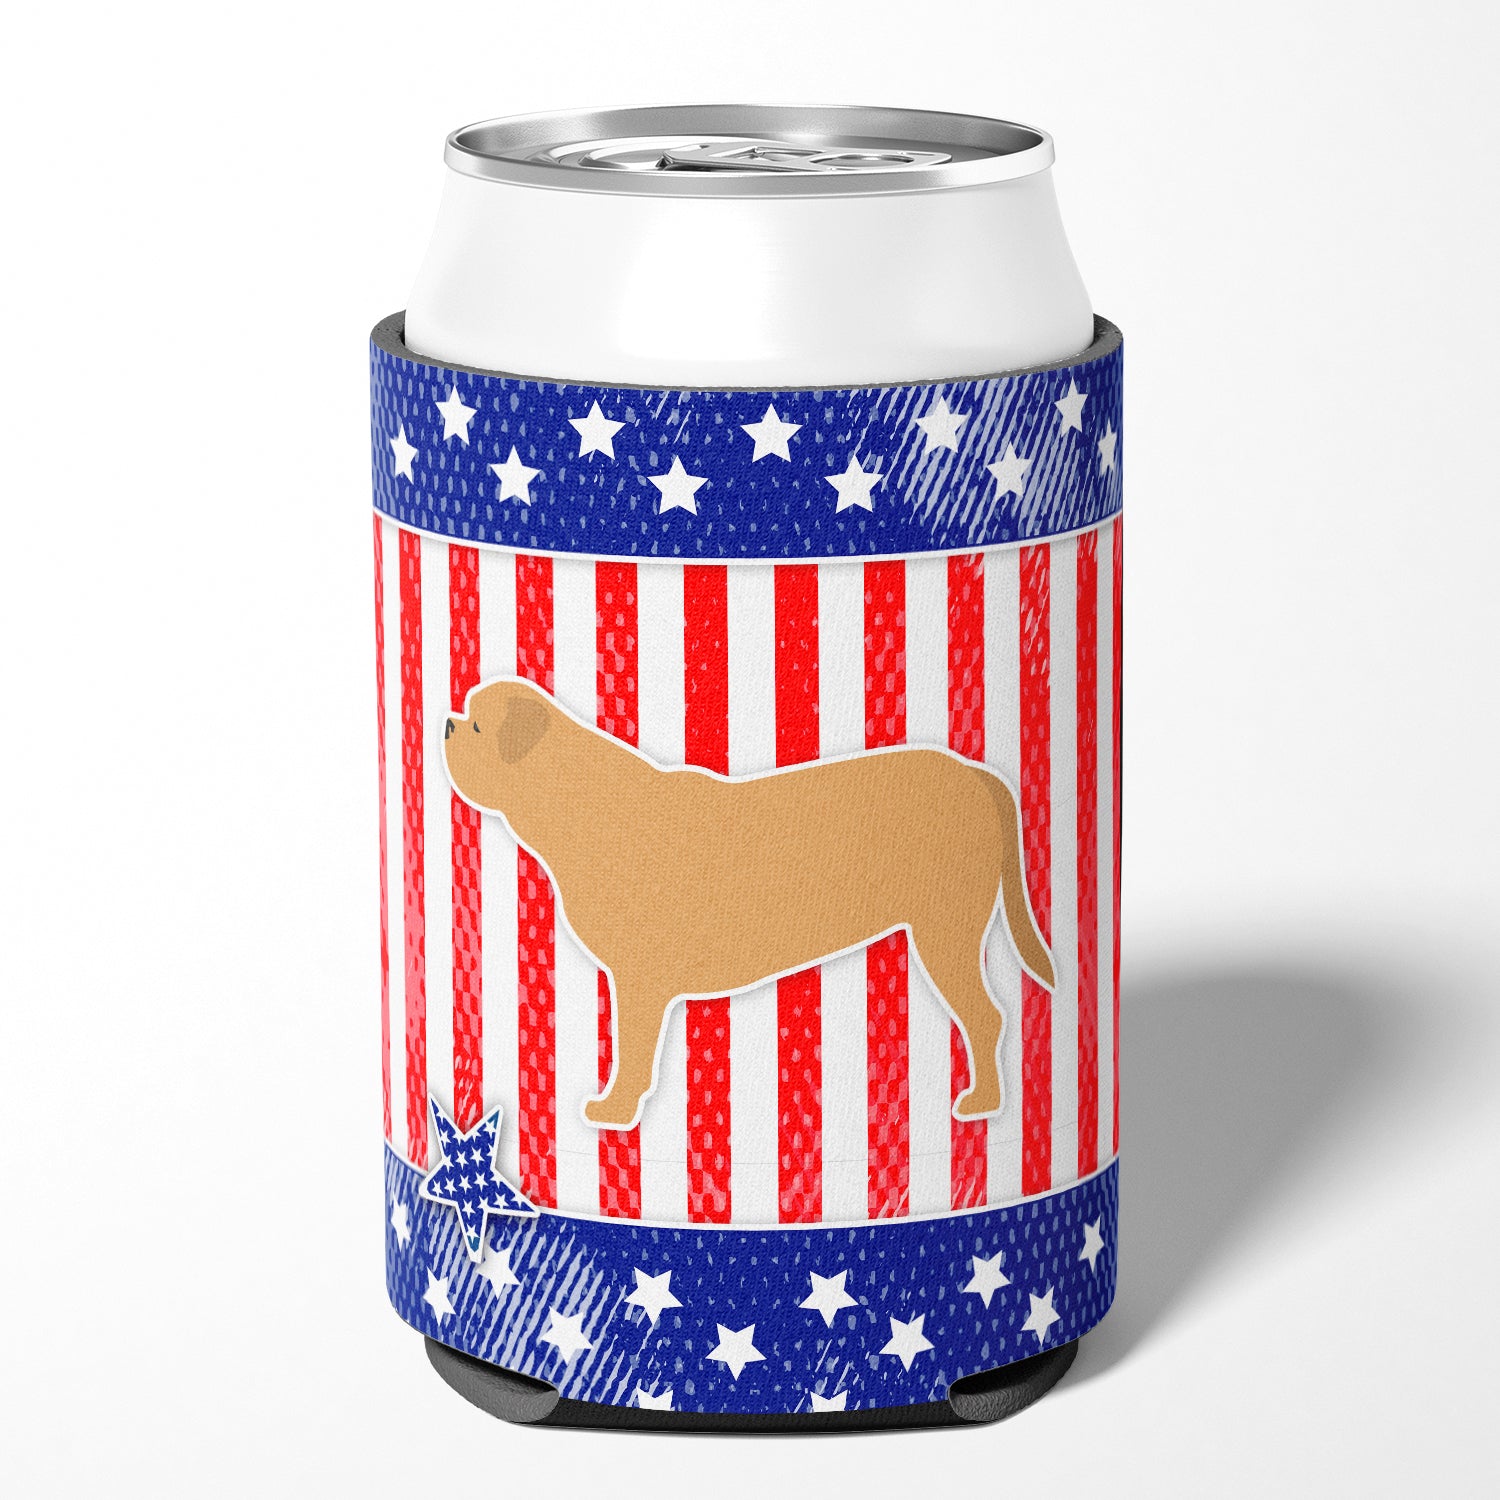 USA Patriotic Dogue de Bordeaux Porte-canette ou porte-bouteille BB3370CC